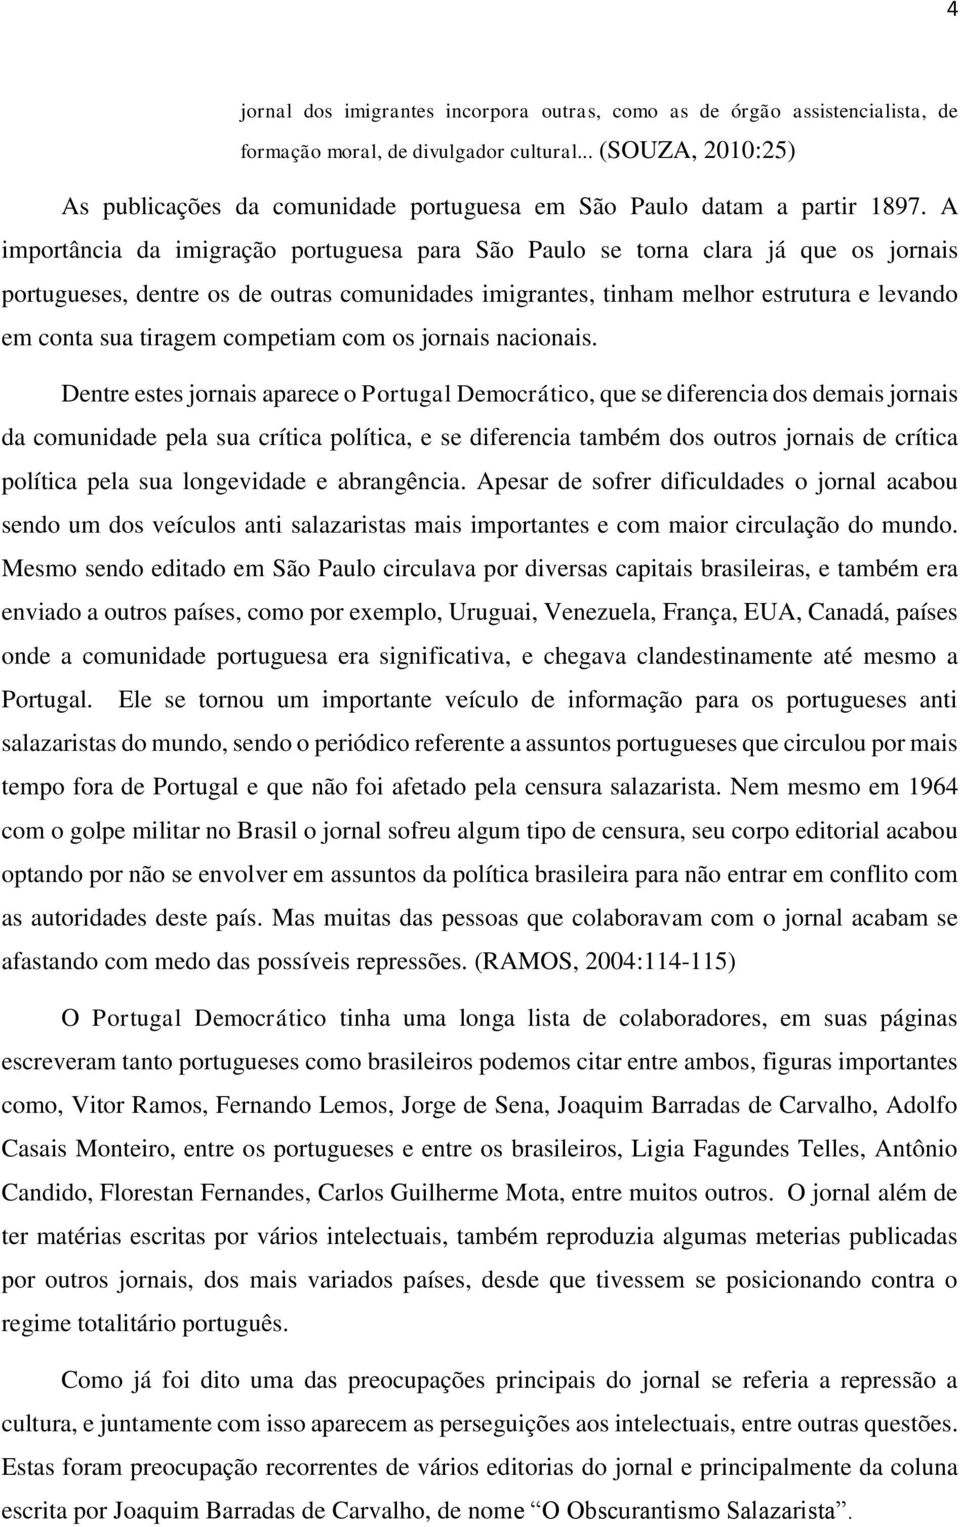 A importância da imigração portuguesa para São Paulo se torna clara já que os jornais portugueses, dentre os de outras comunidades imigrantes, tinham melhor estrutura e levando em conta sua tiragem